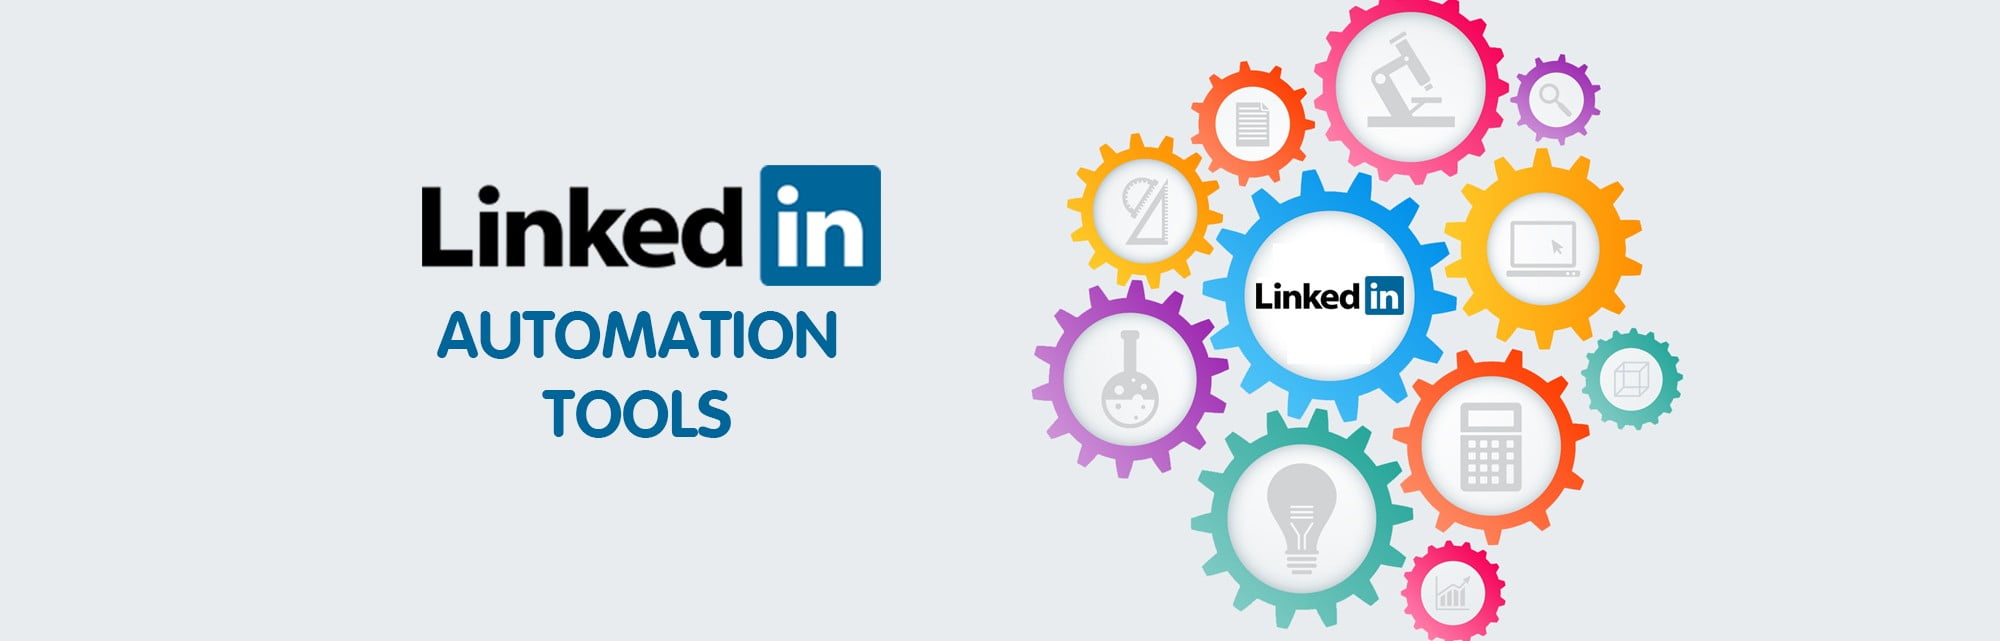 LinkedIn automation tools